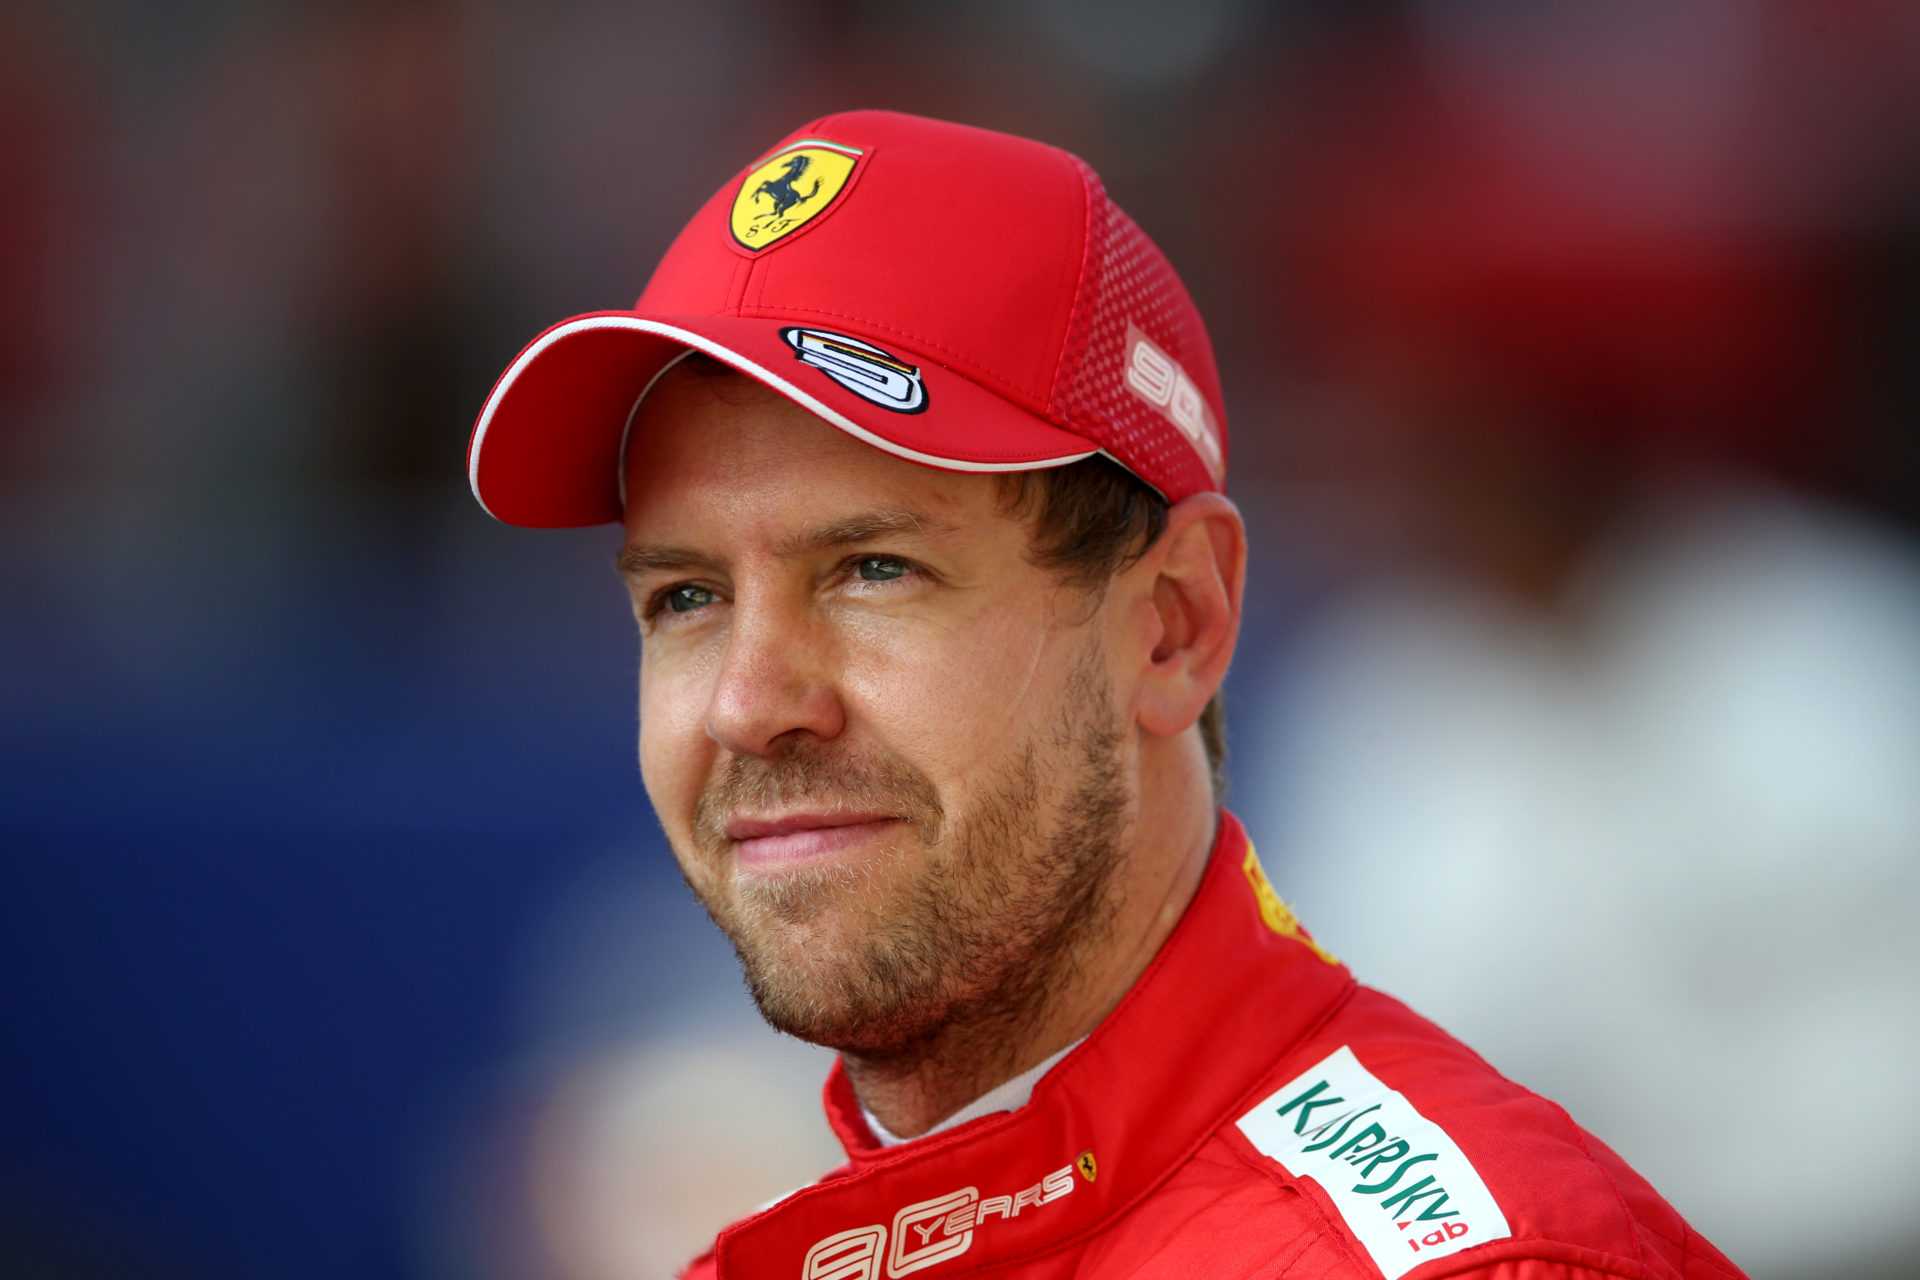 REGARDER: Sebastian Vettel libère son côté loufoque lors du lancement de la voiture Aston Martin F1